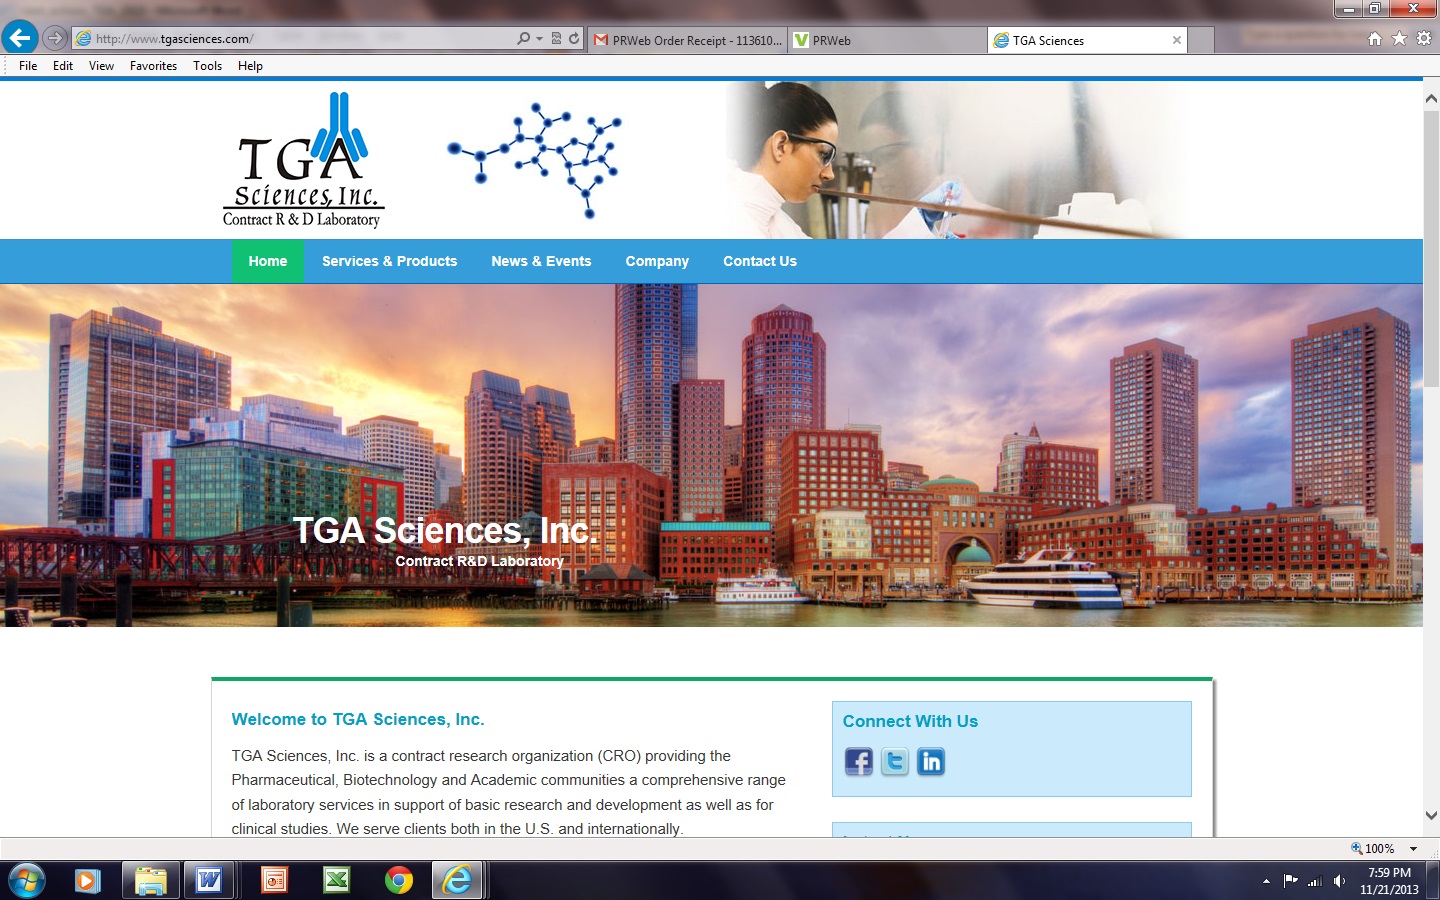 TGA Sciences Inc. website